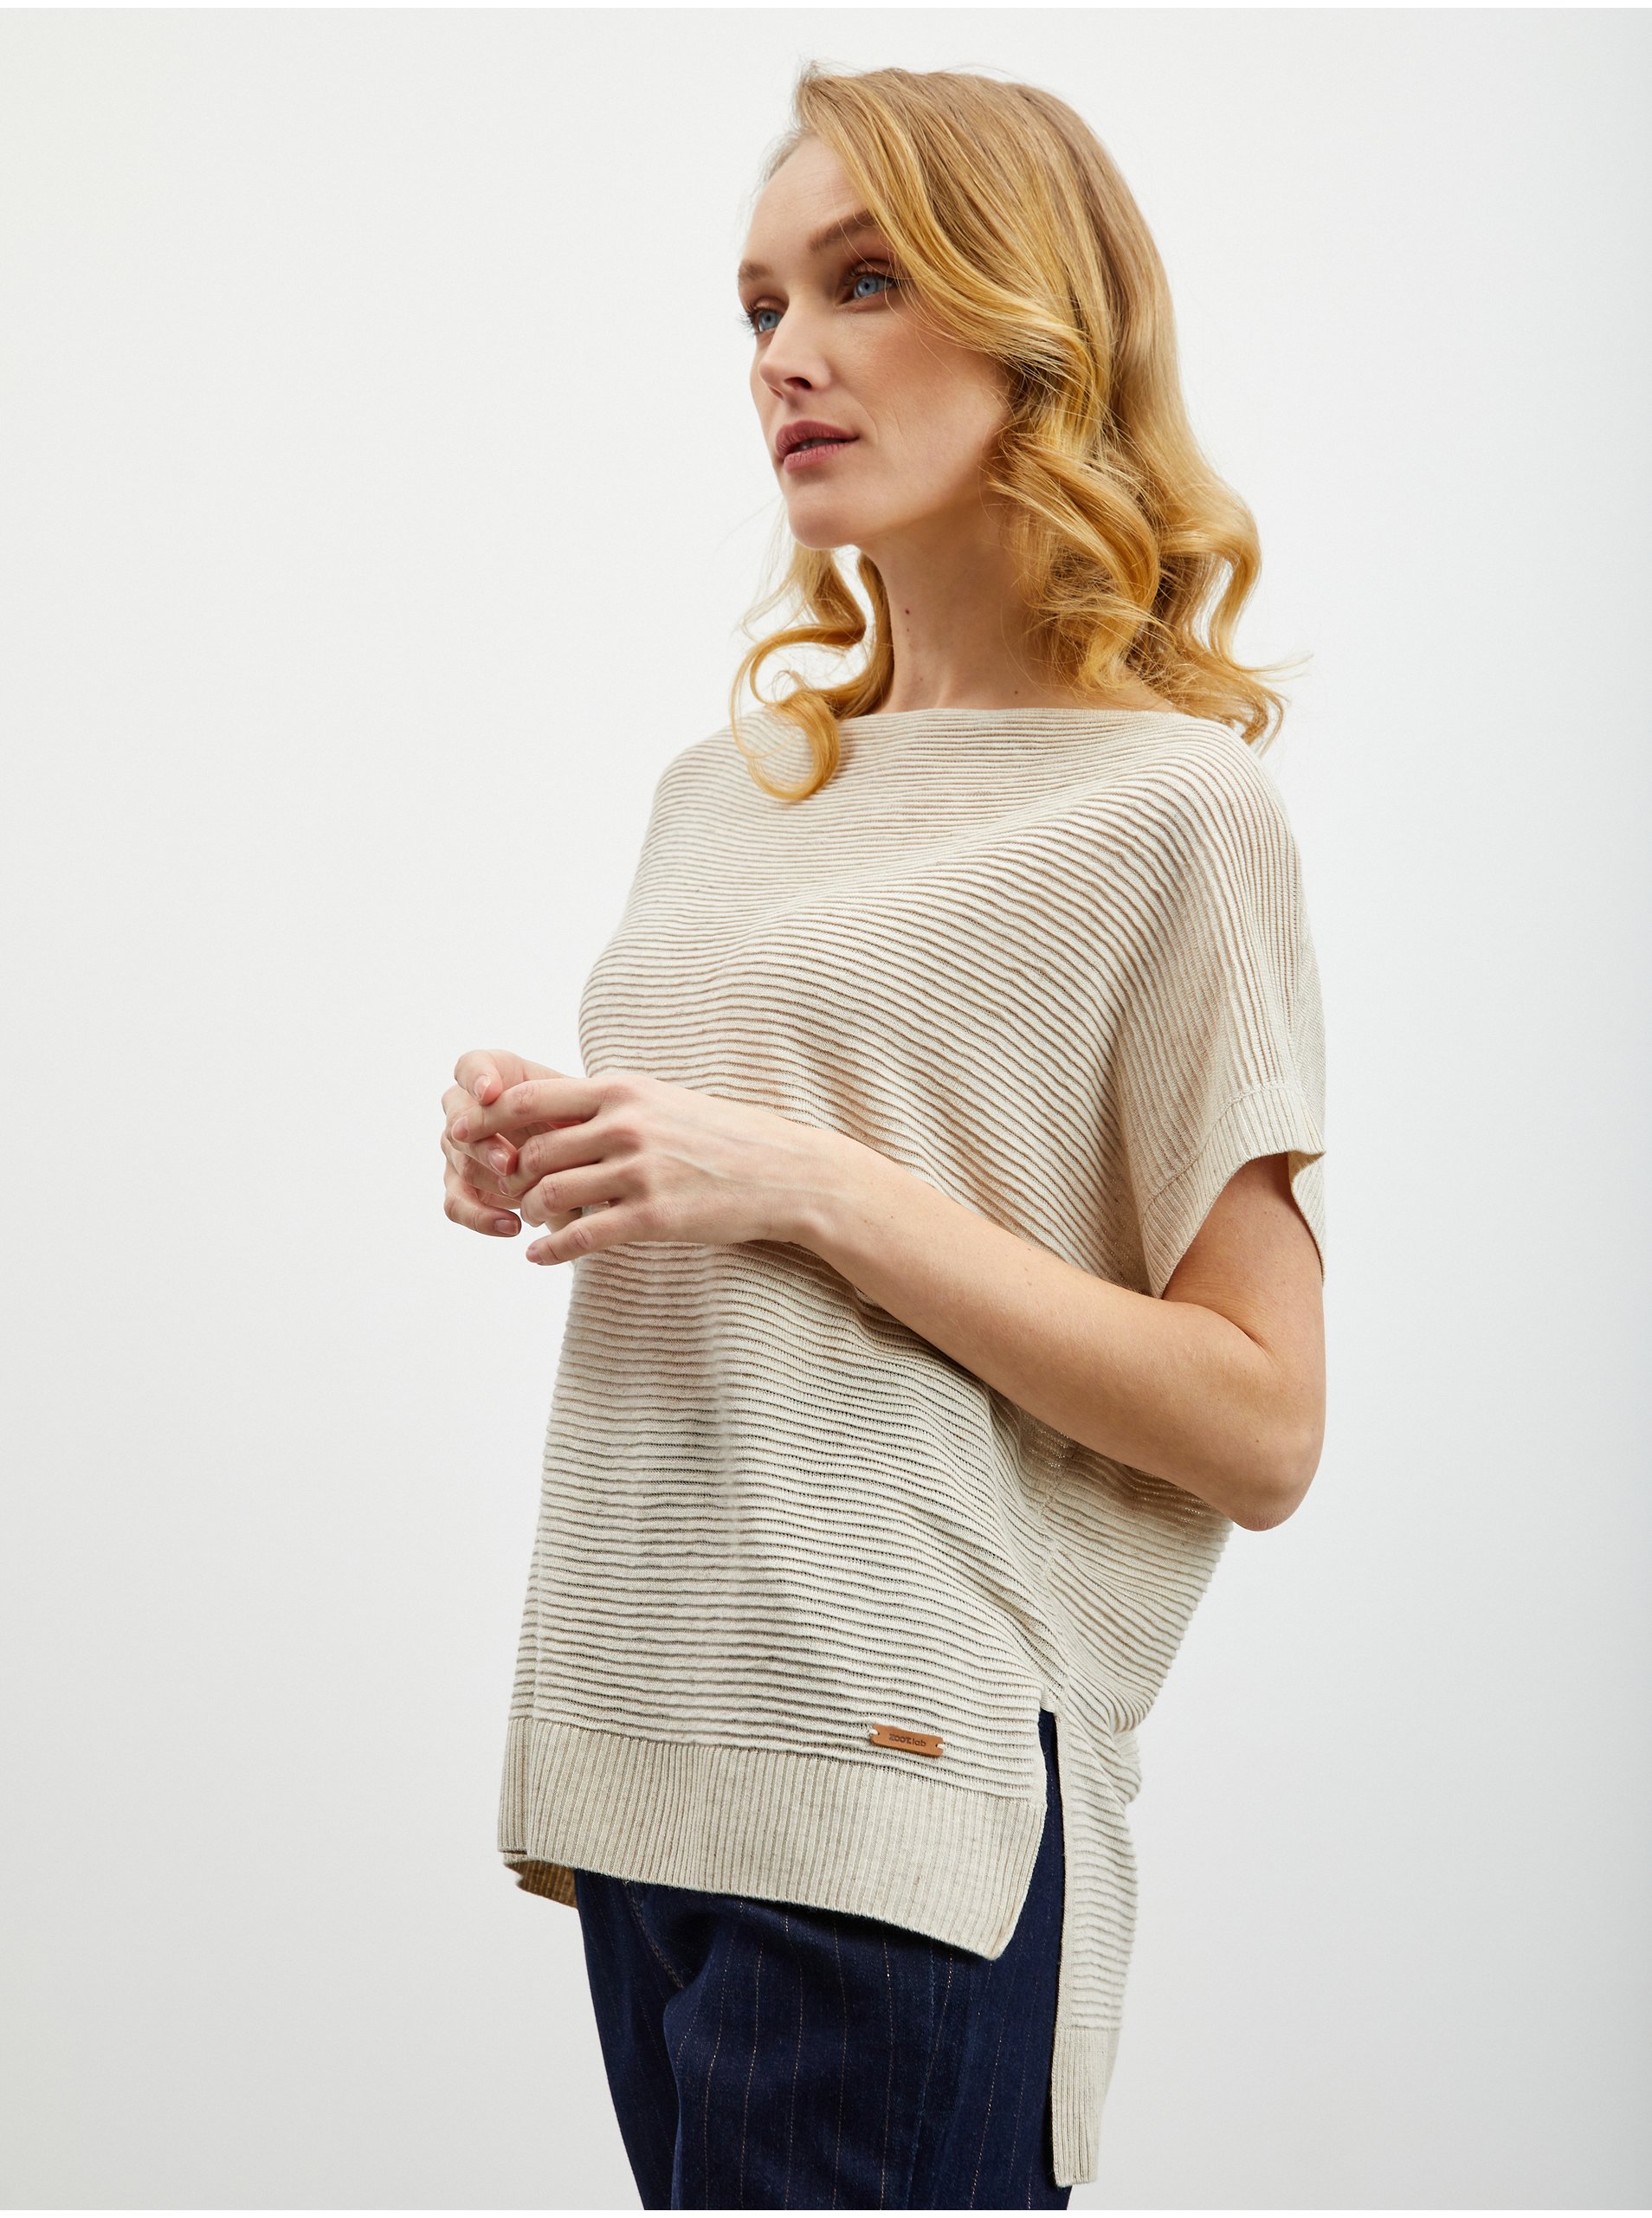 E-shop Béžová dámská svetrová vesta s příměsí lnu ZOOT.lab Danae